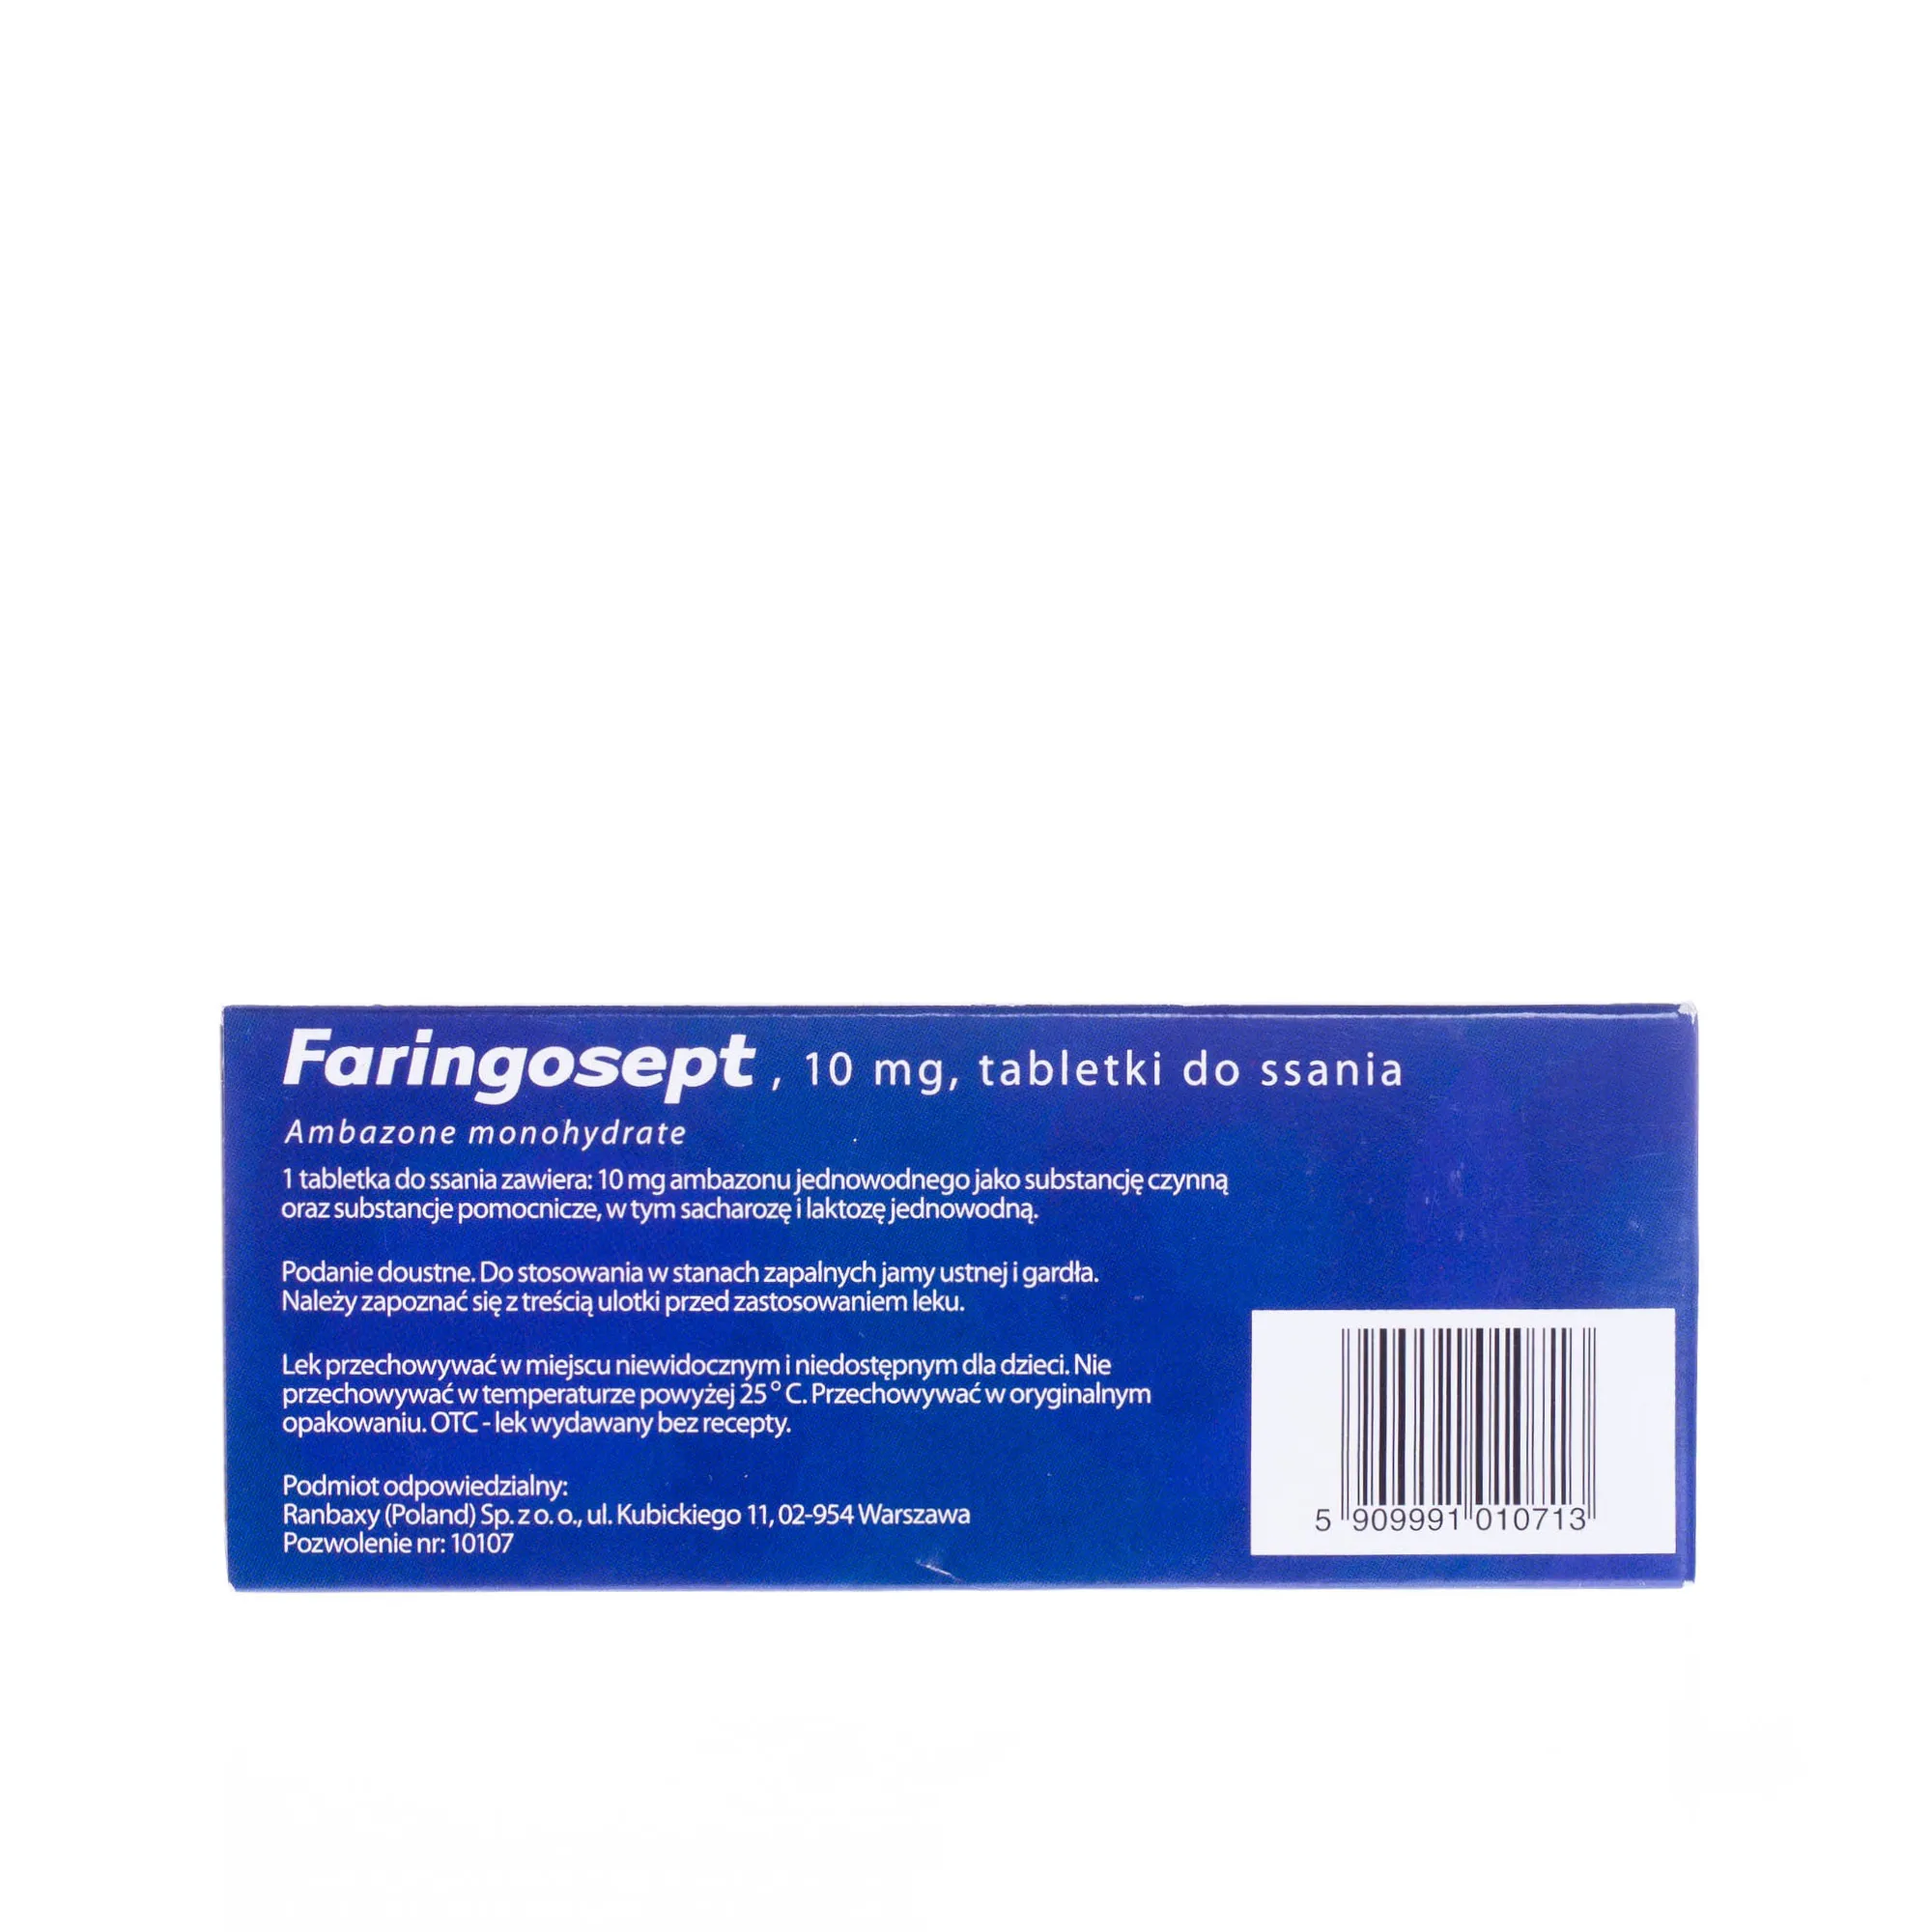 Faringosept - 10 tabletek do ssania do stosowania w stanach zapalnych, smak kakaowy 